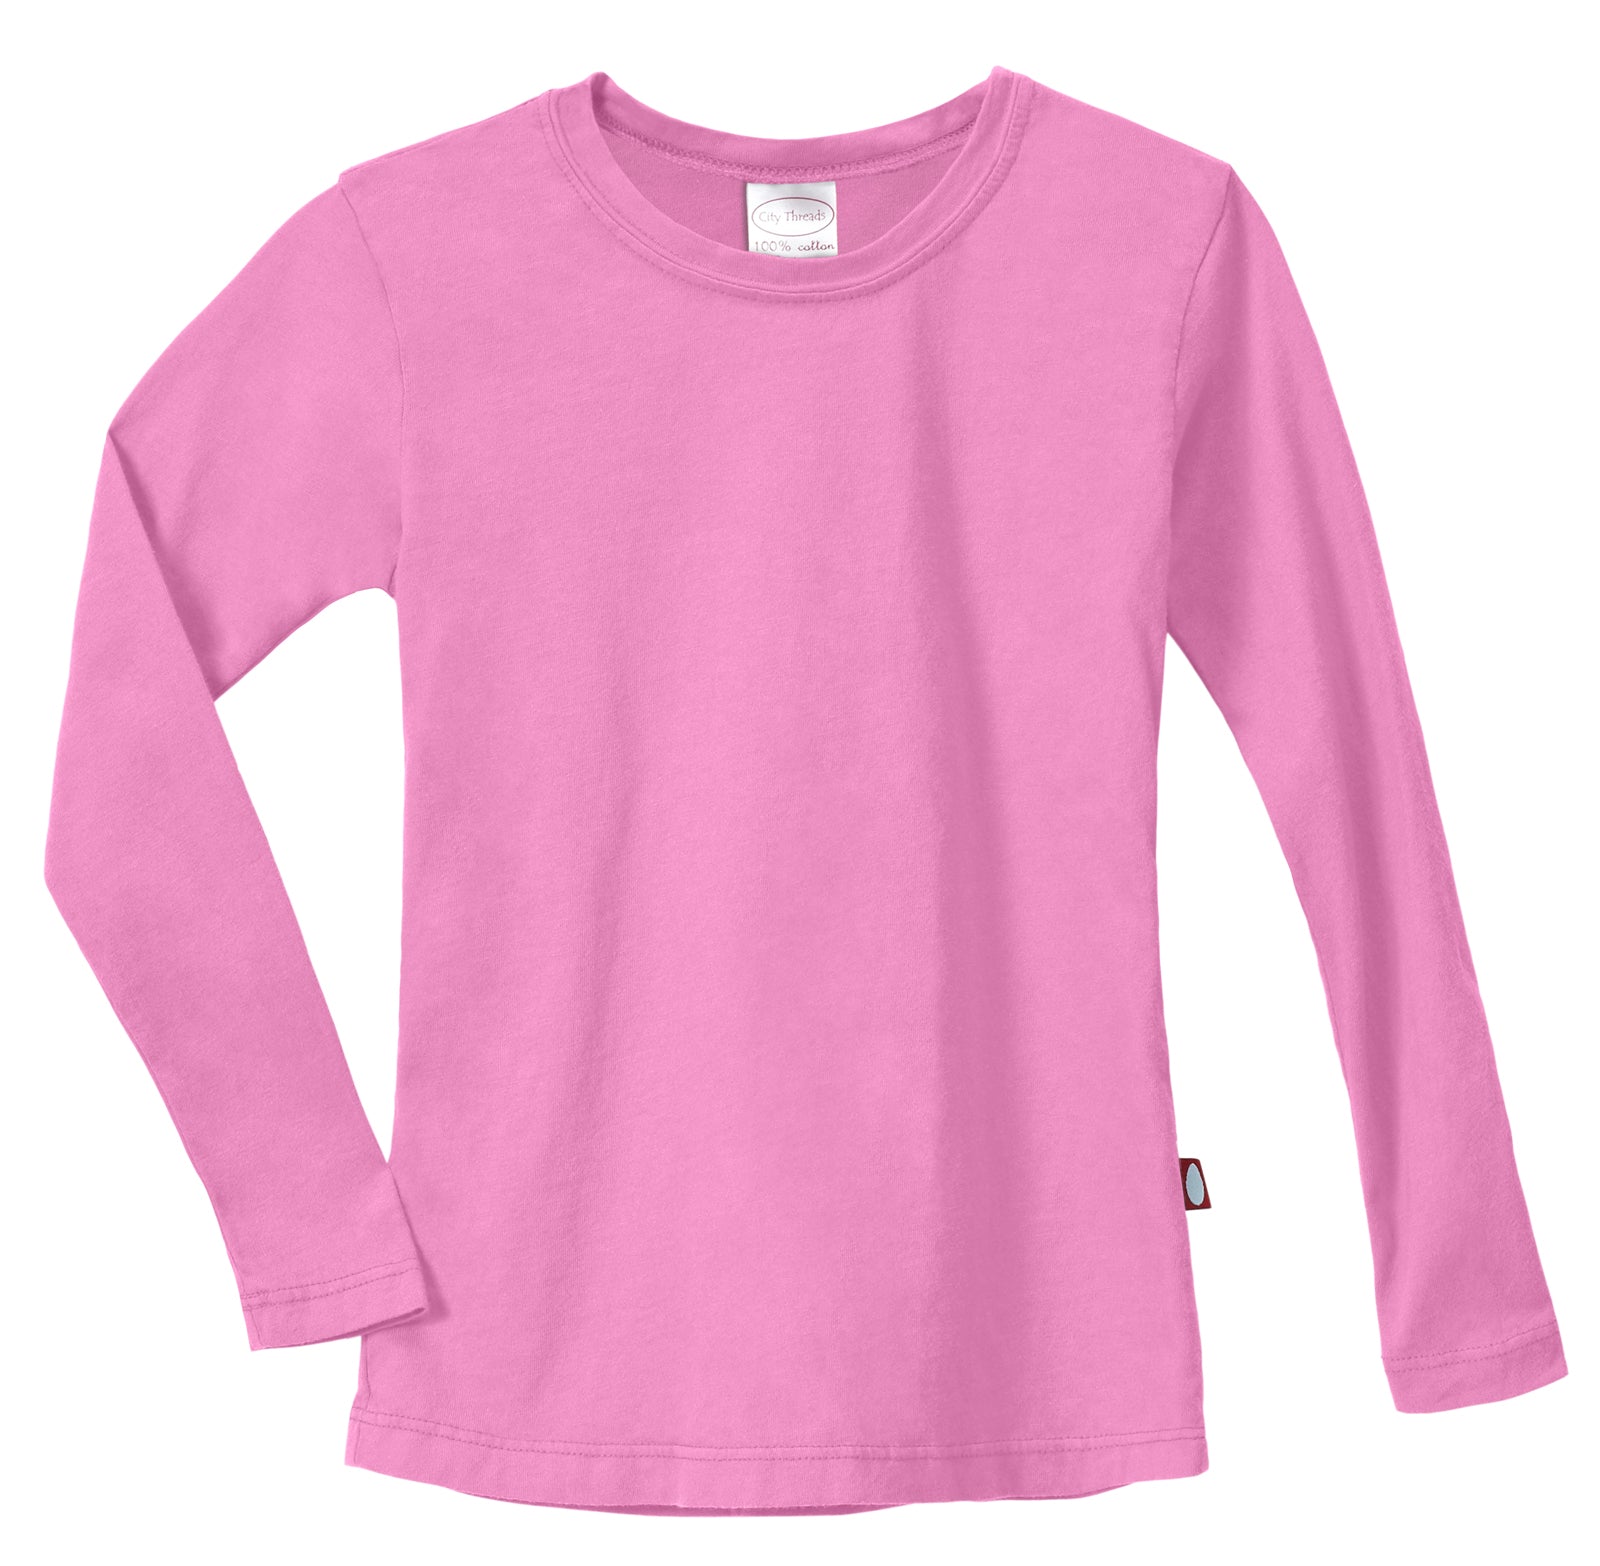 Girls Soft Cotton Jersey Long Sleeve Tee | Hot Pink - City Threads USA